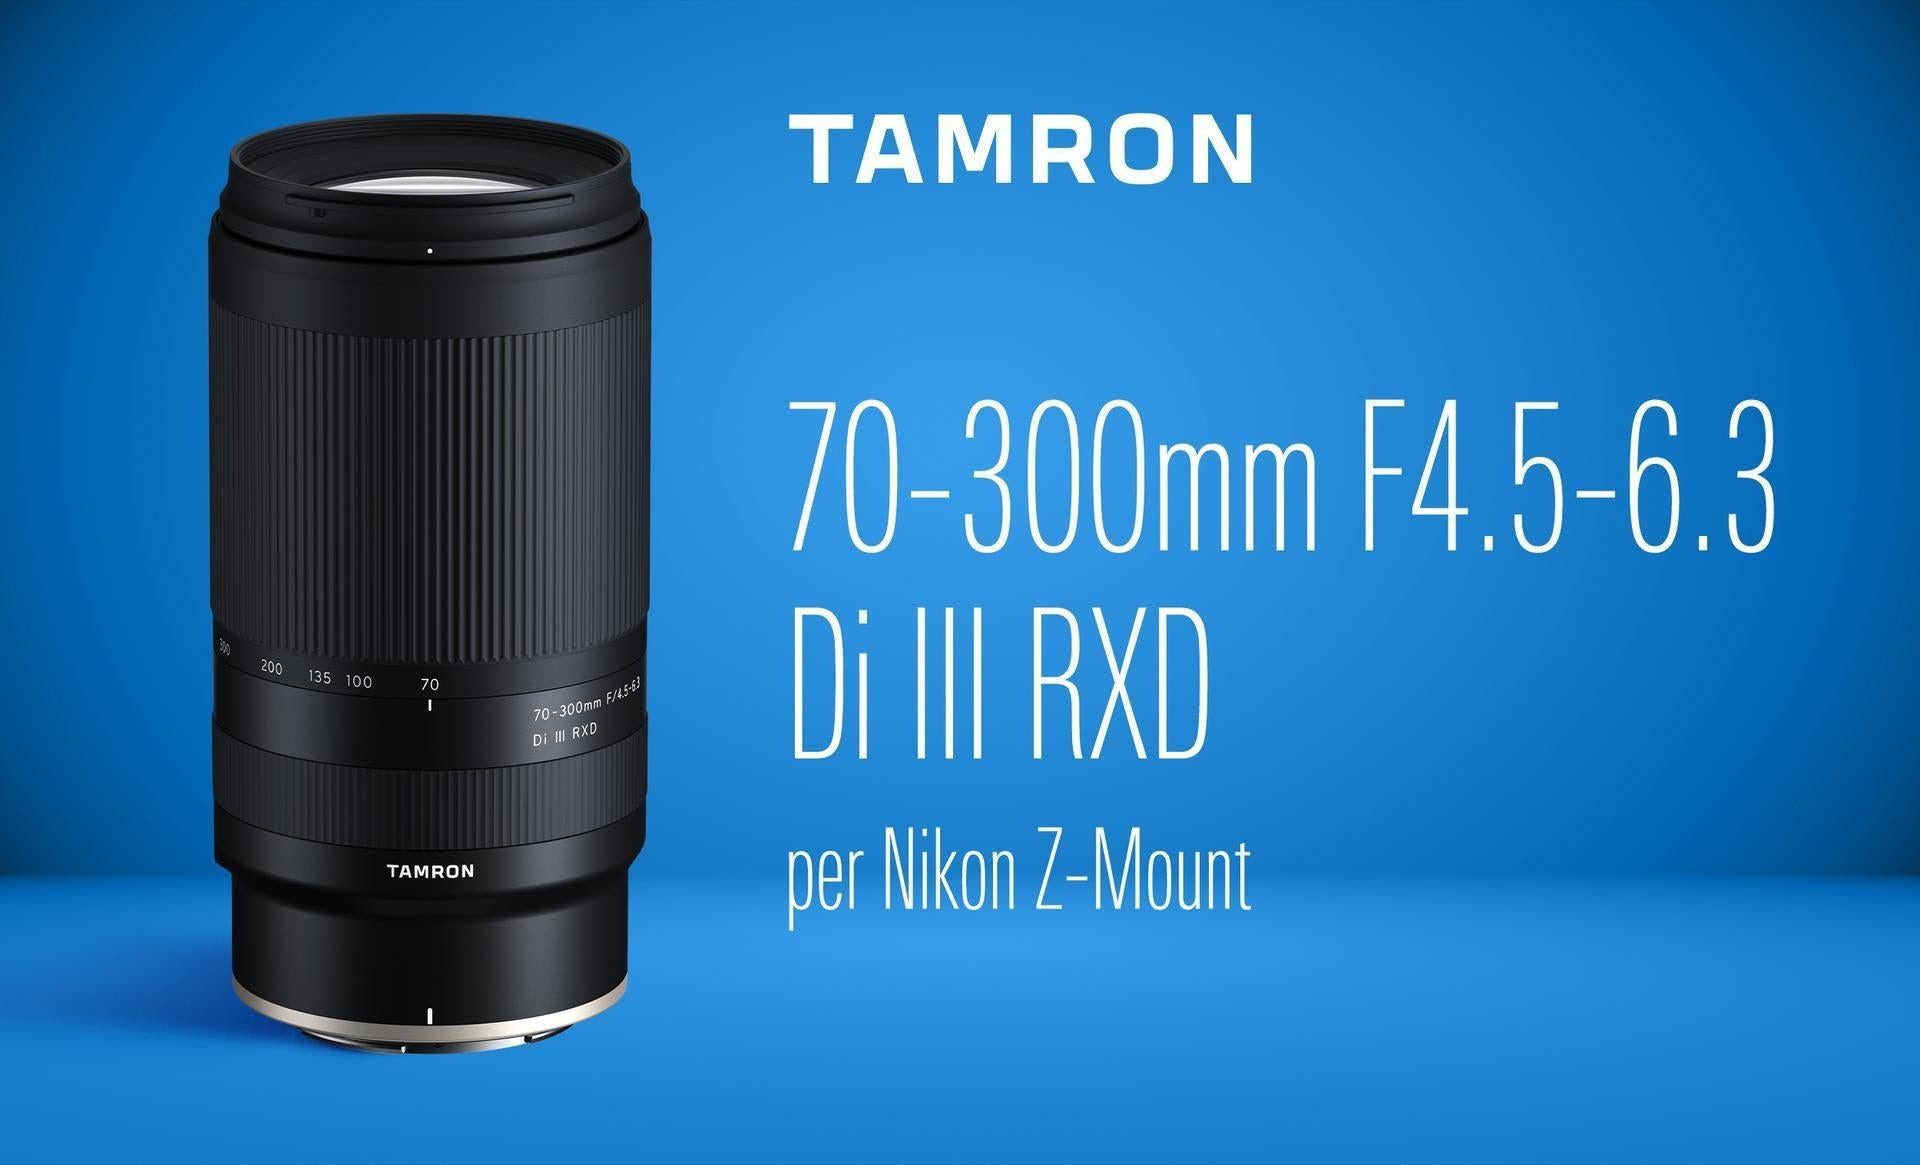 Tamron 70-300mm F4.5-6.3 Di III RXD per Nikon Z-Mount - Garanzia Polyphoto 5 anni - Cine Sud è da 47 anni sul mercato!  TA047Z